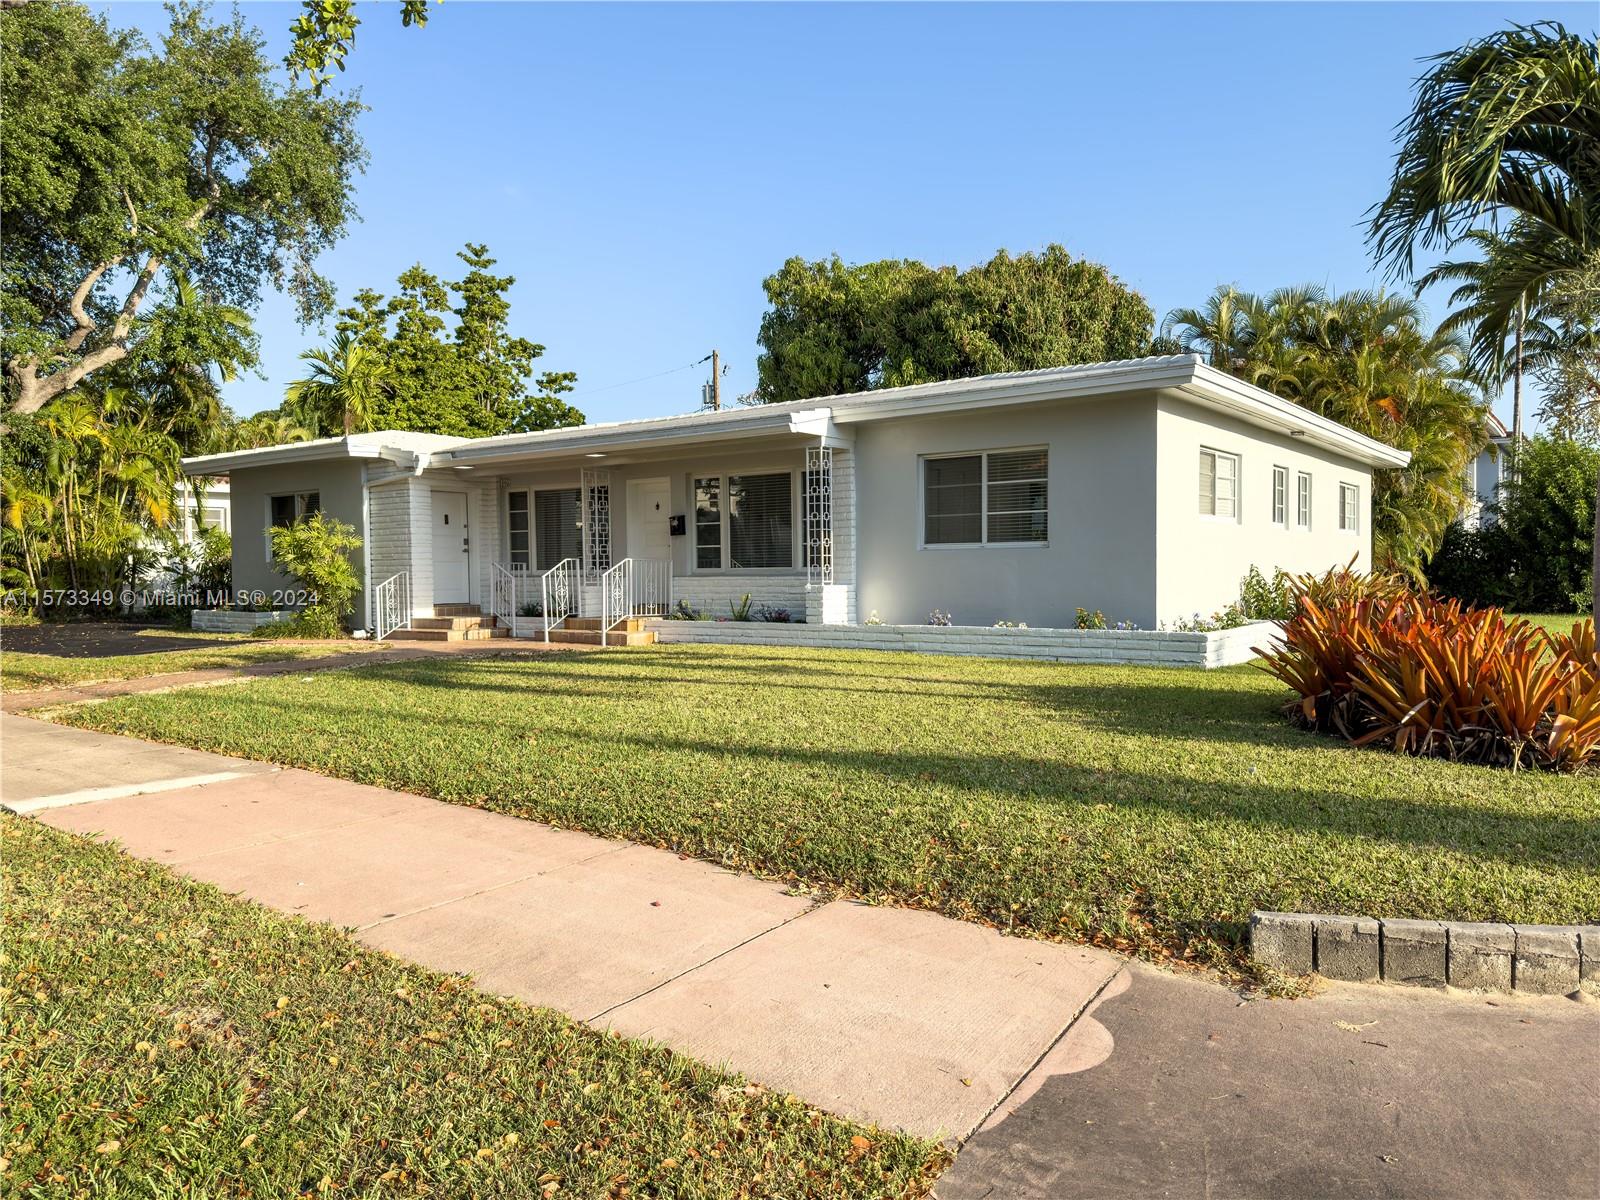 Rental Property at 401 Malaga Ave, Coral Gables, Broward County, Florida -  - $1,450,000 MO.